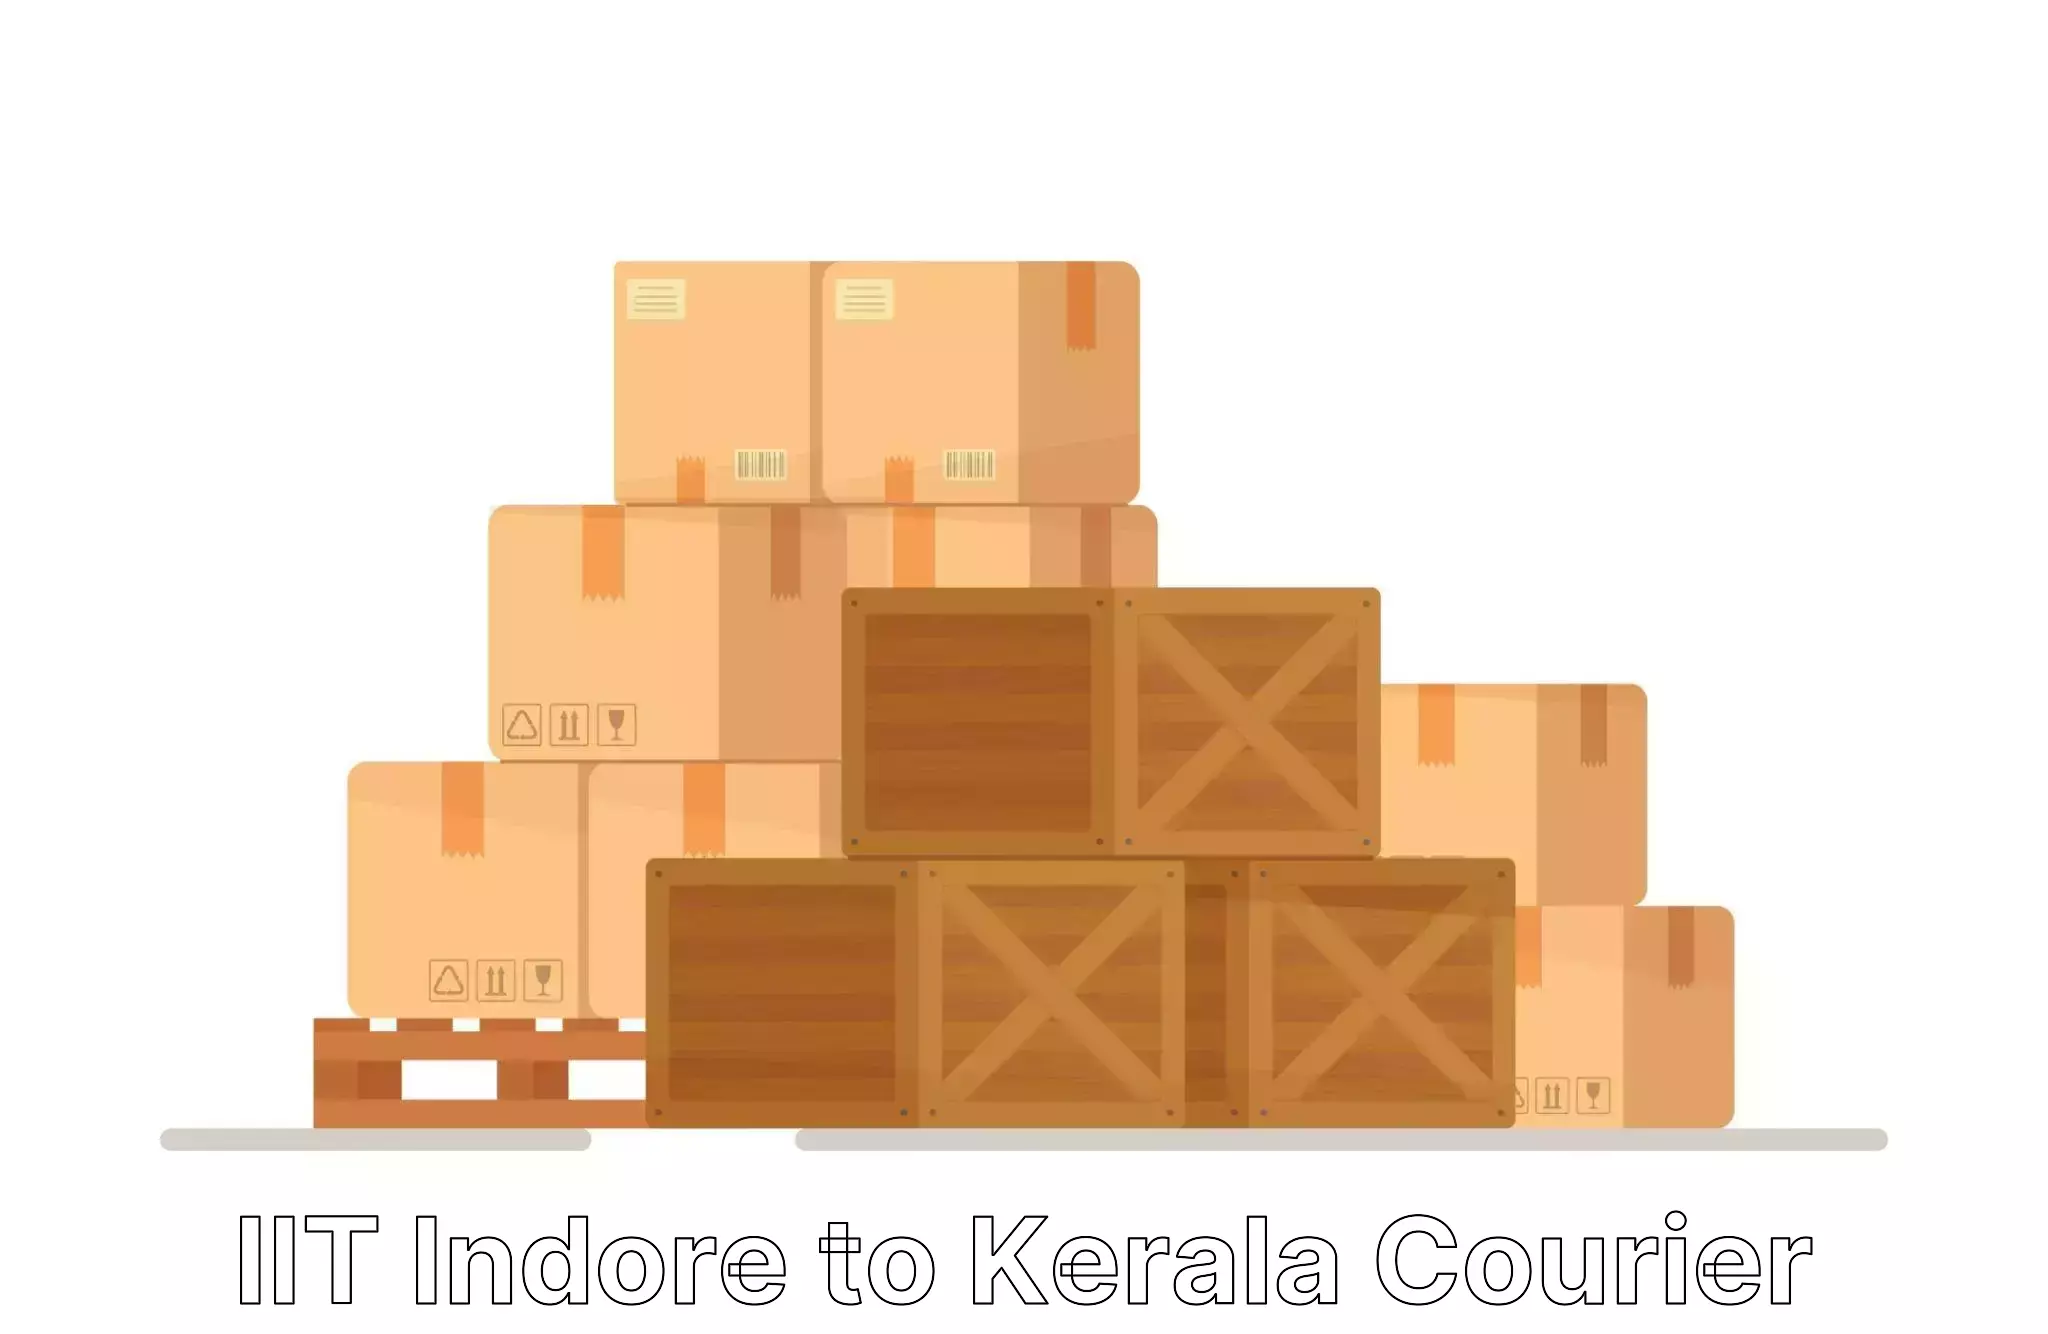 Comprehensive goods transport in IIT Indore to Kerala